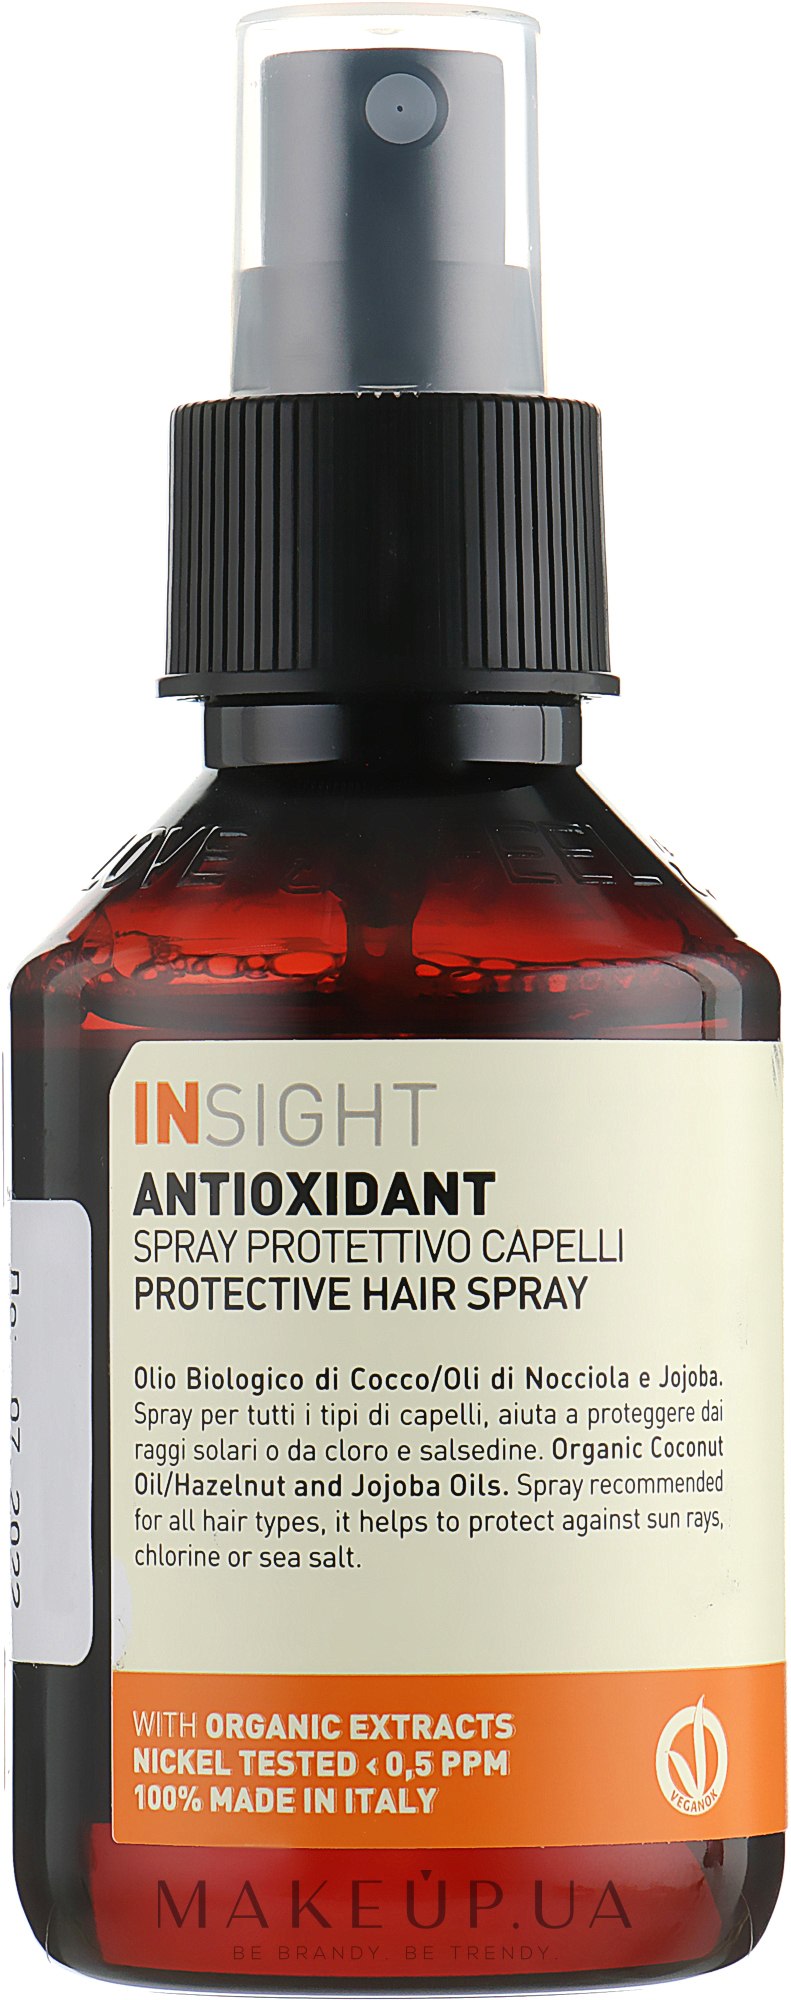 Спрей антиоксидант защитный для перегруженных волос - Insight Antioxidant Protective Hair Spray — фото 100ml